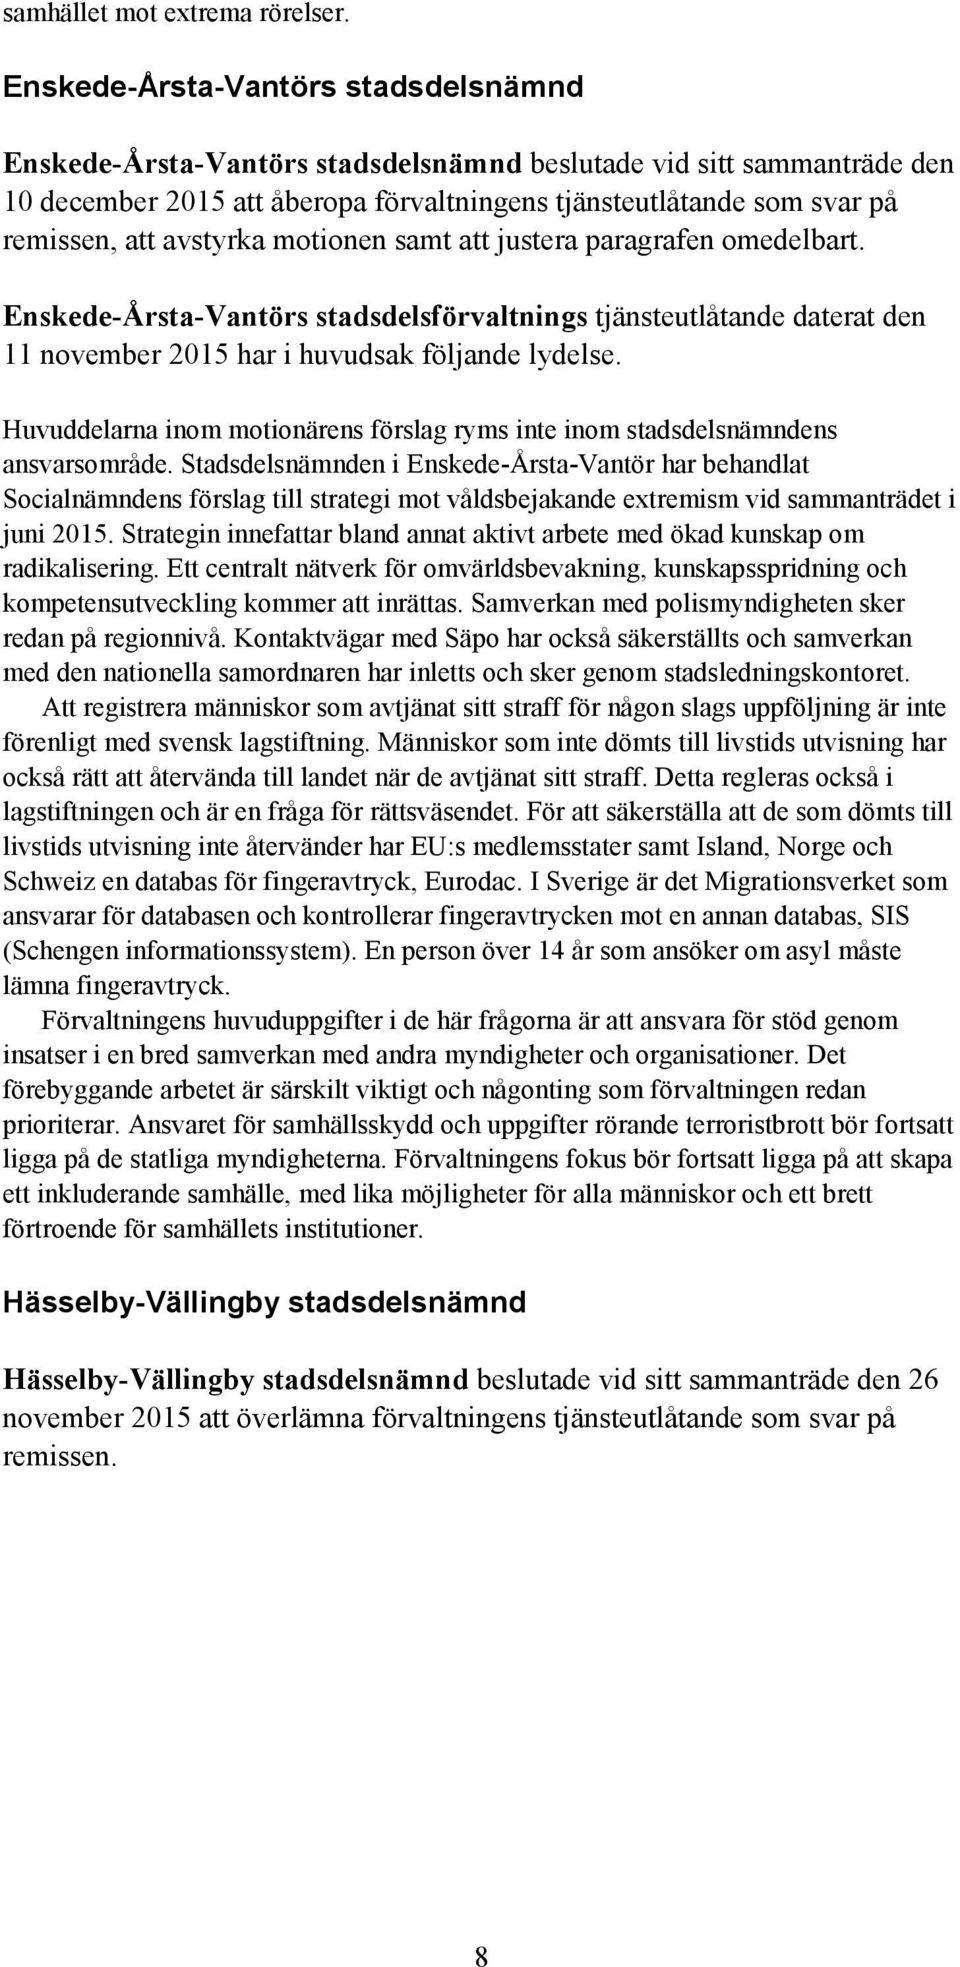 avstyrka motionen samt att justera paragrafen omedelbart. Enskede-Årsta-Vantörs stadsdelsförvaltnings tjänsteutlåtande daterat den 11 november 2015 har i huvudsak följande lydelse.